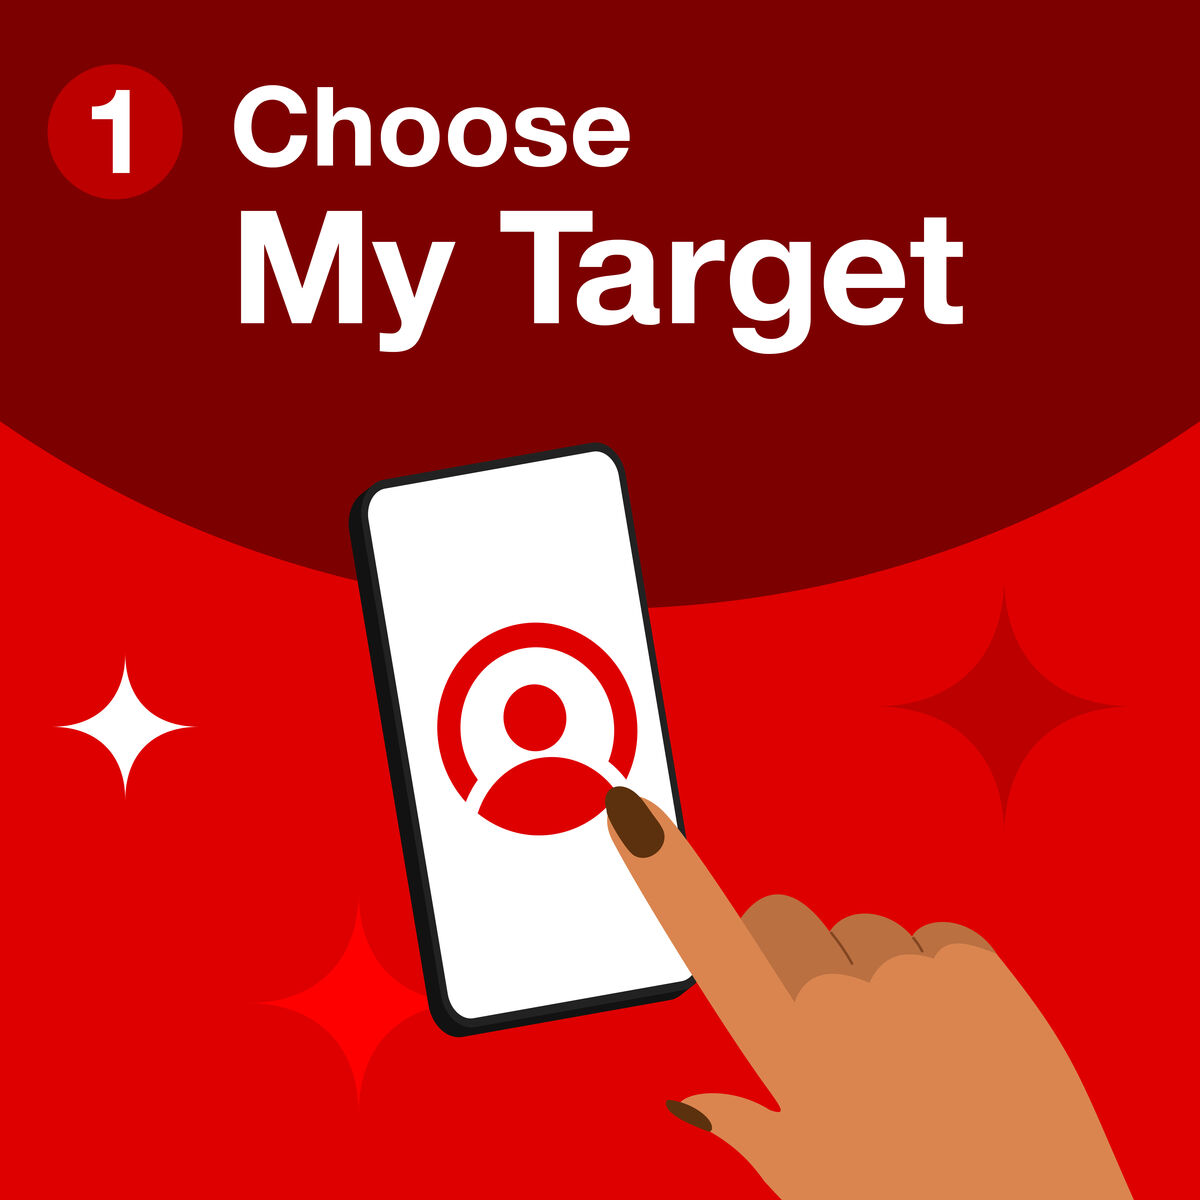 Step one, choose my Target